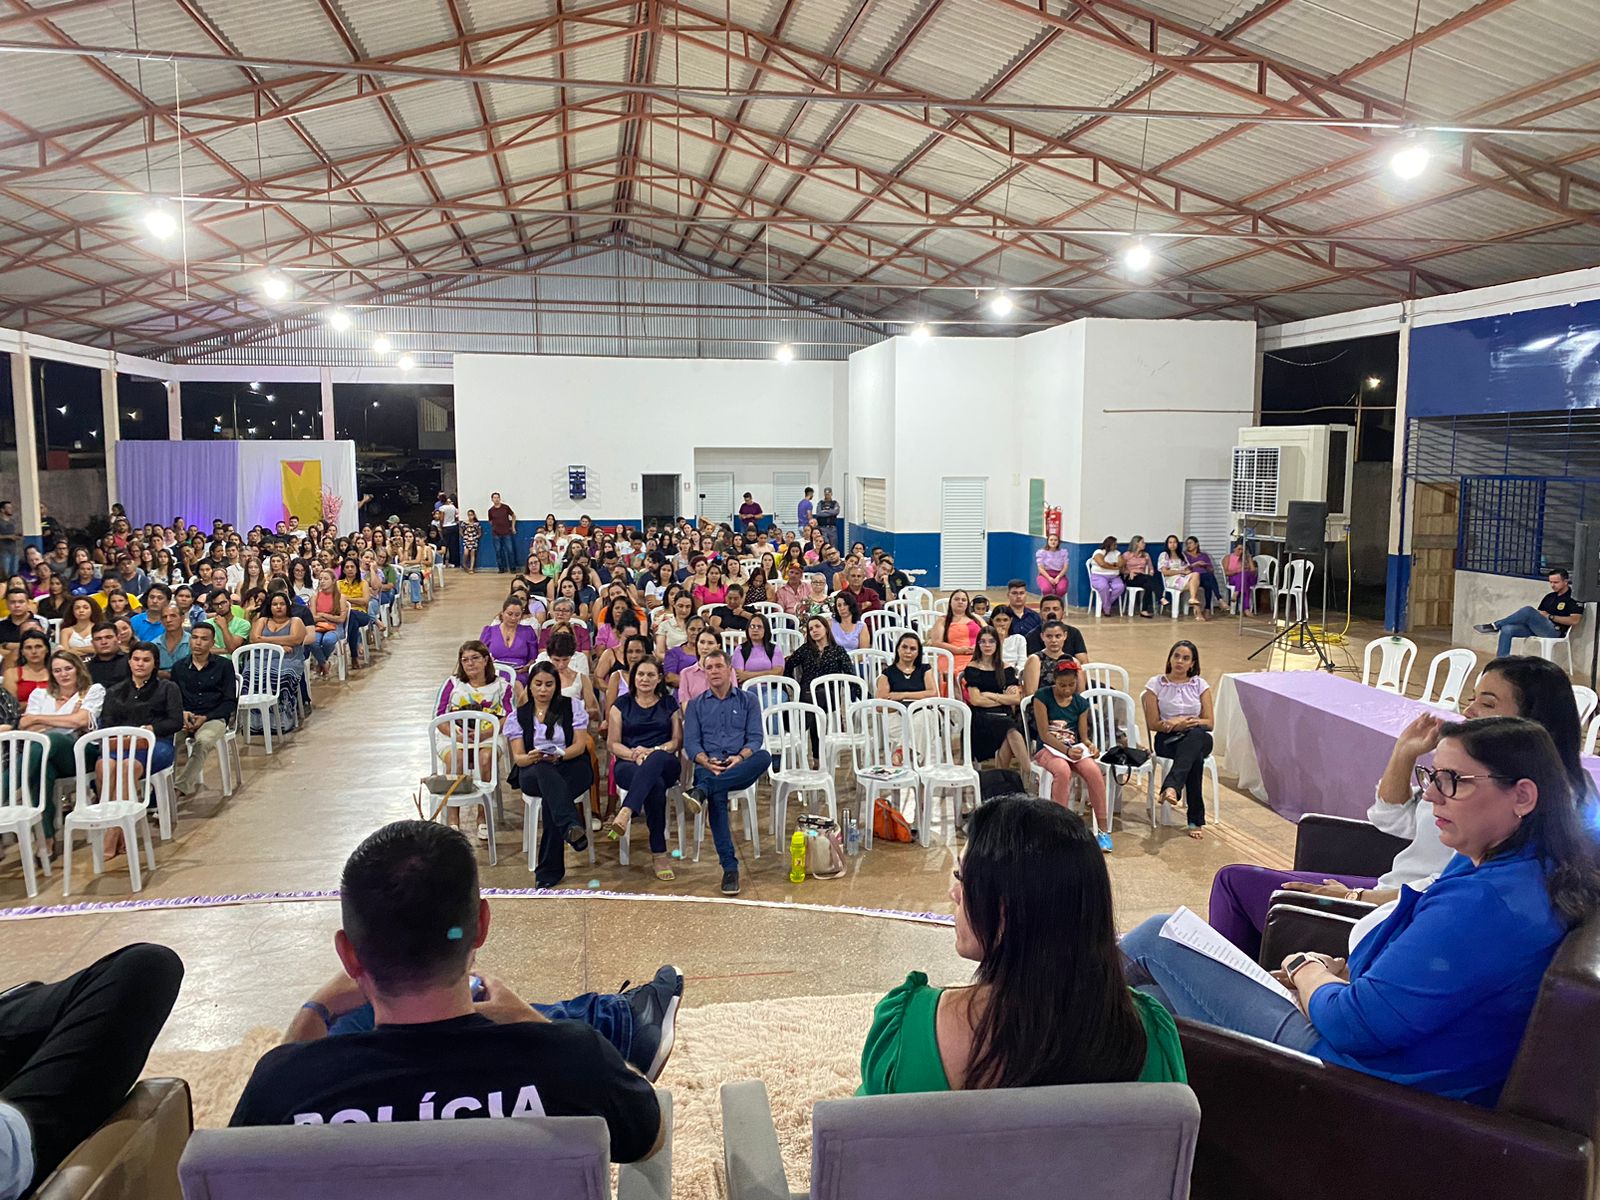 Secretaria Municipal de Saúde e Comitê Mulher do Sicredi promoveram a roda de conversa “Agosto Lilás” em Guarantã do Norte.